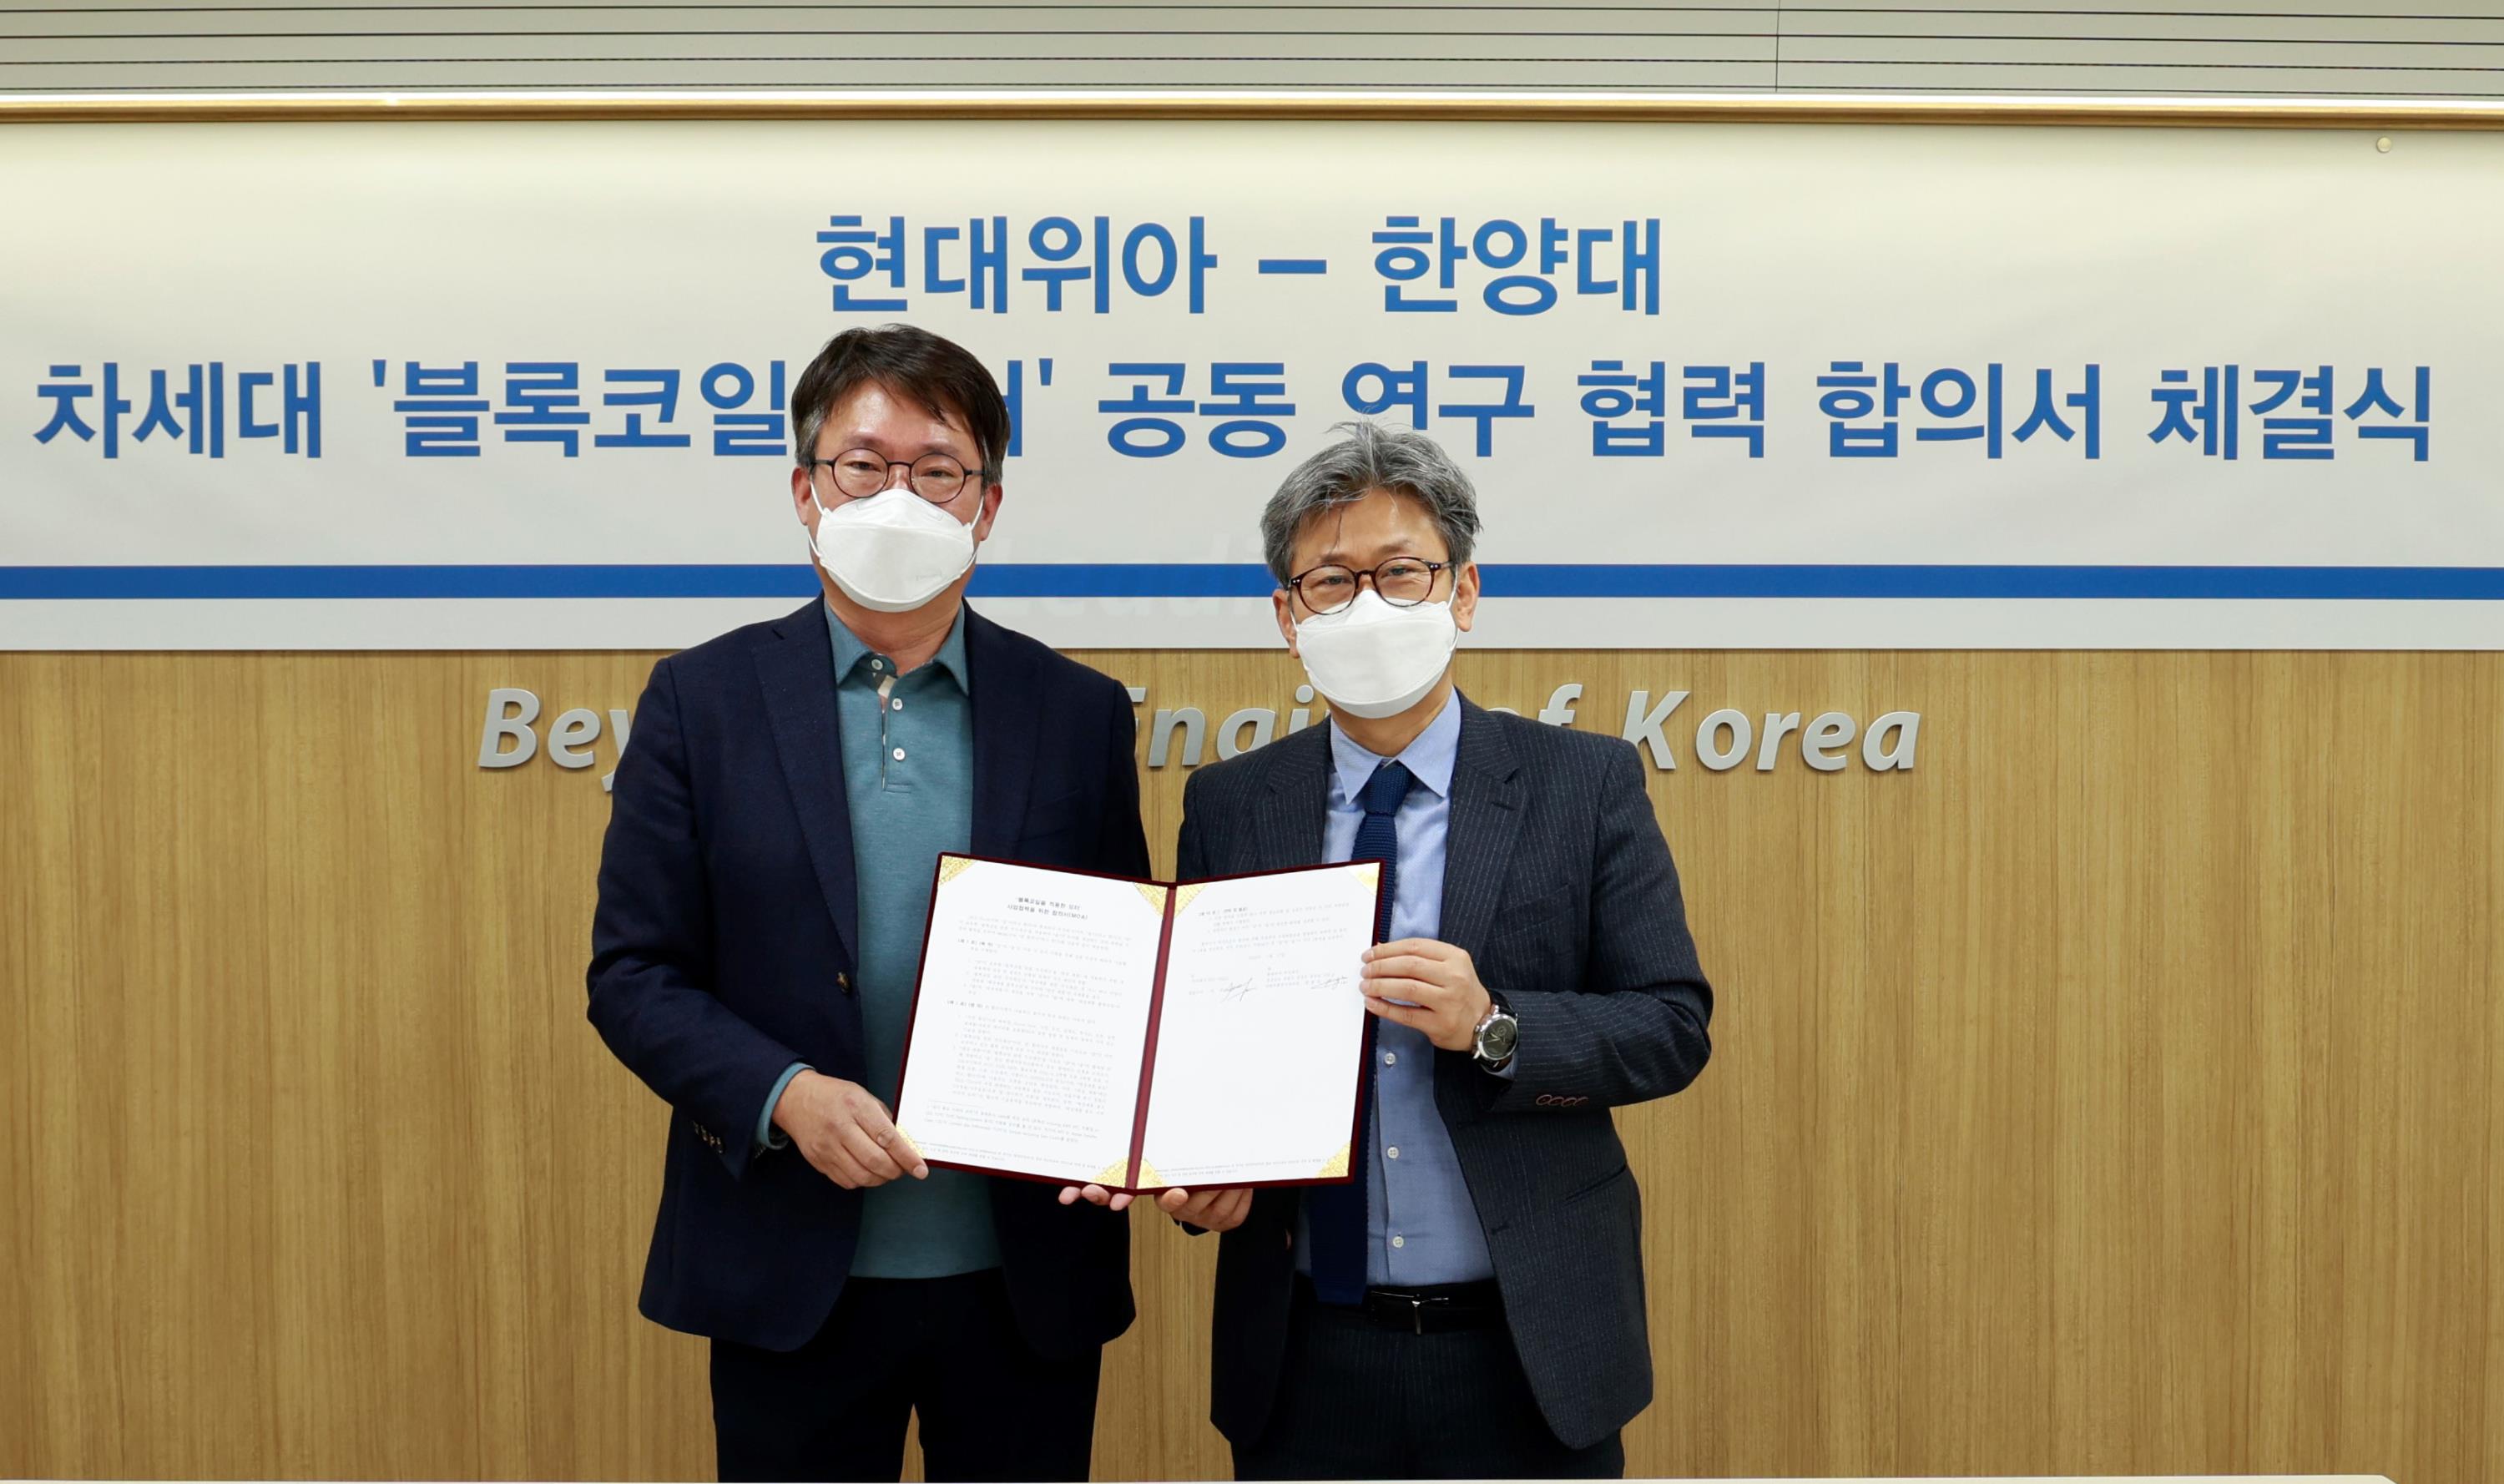 현대위아 차량부품연구센터장 원광민 상무(왼쪽)와 한양대 이주 교수가 22일 서울 성동구 한양대학교에서 '블록코일을 적용한 모터 사업 협력을 위한 합의서(MOA)'를 체결하고 기념 사진을 찍고 있다.